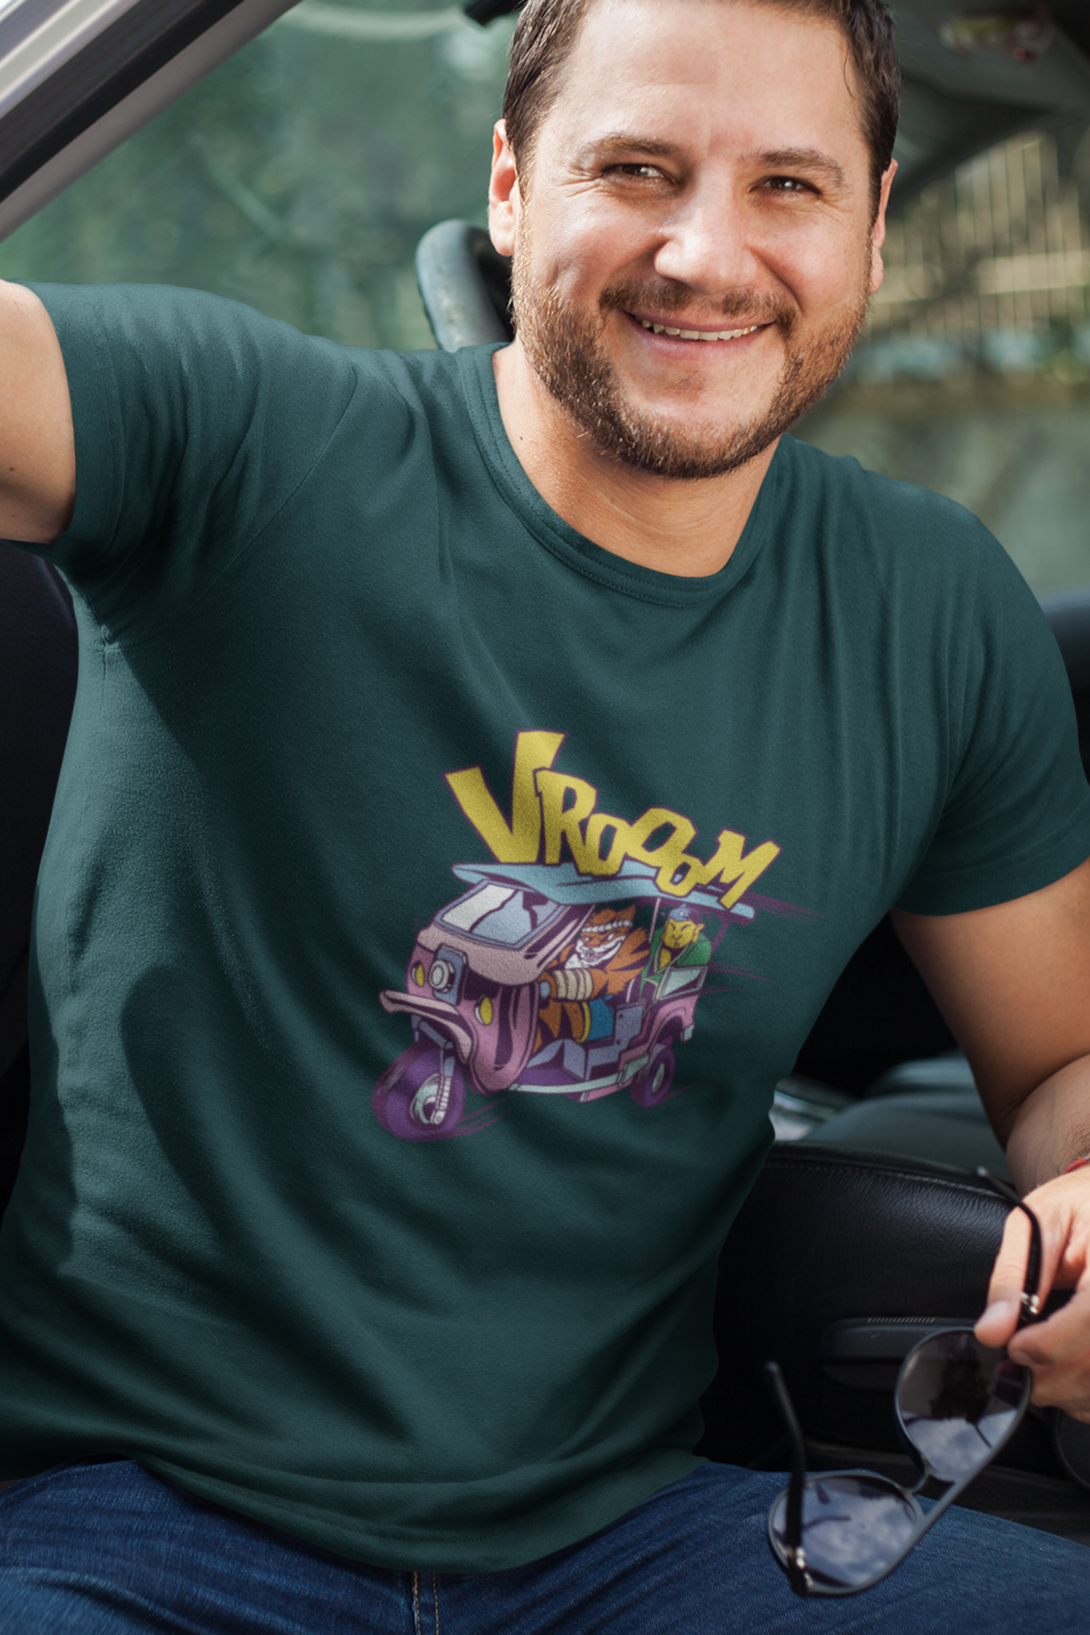 Tiger Rickshaw Printed T-Shirt For Men - WowWaves - 7